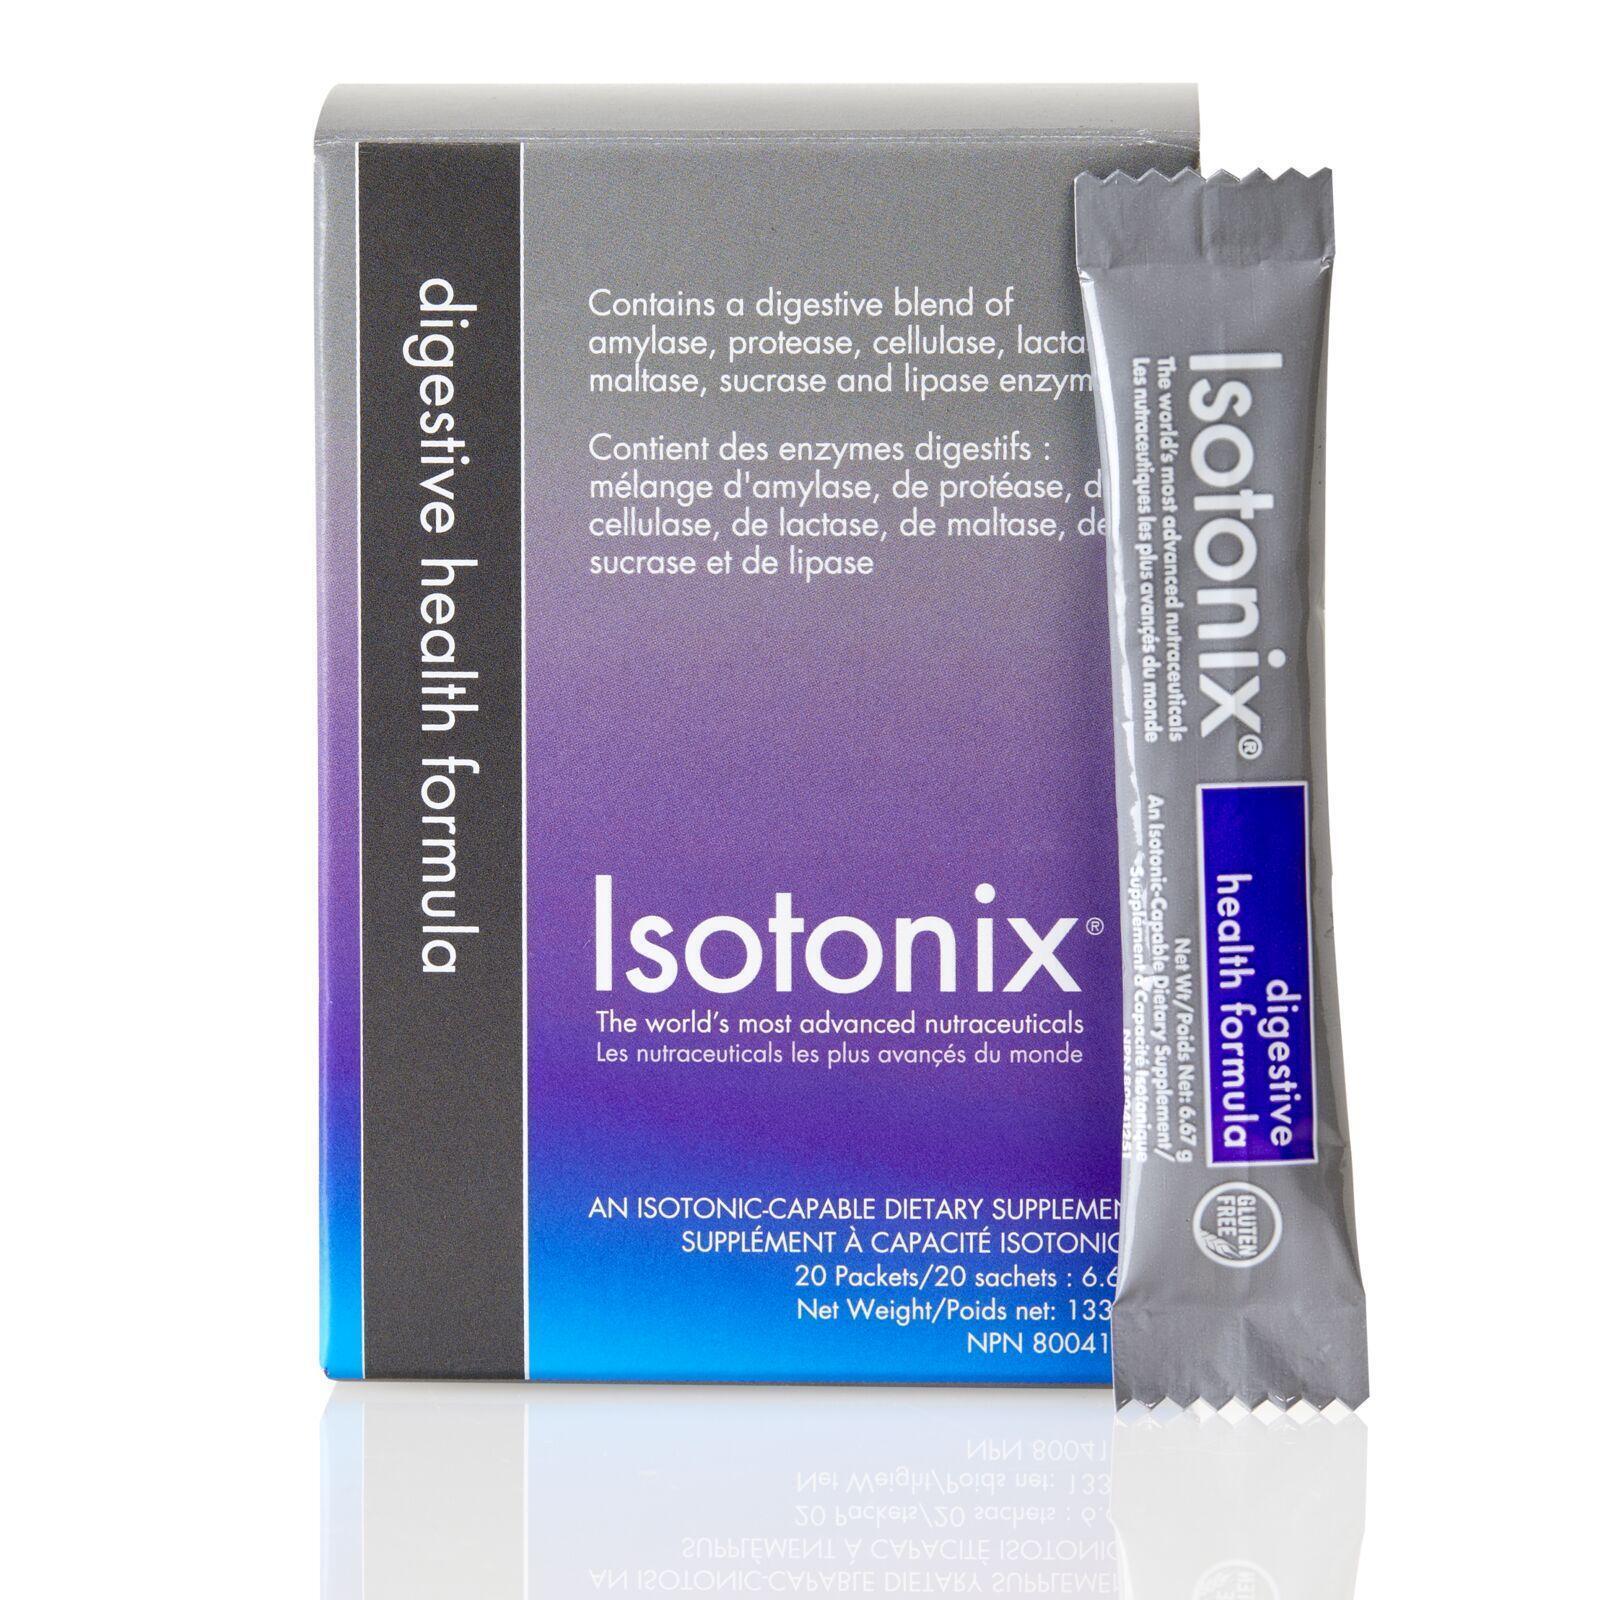 Isotonix Digestive Health Formula